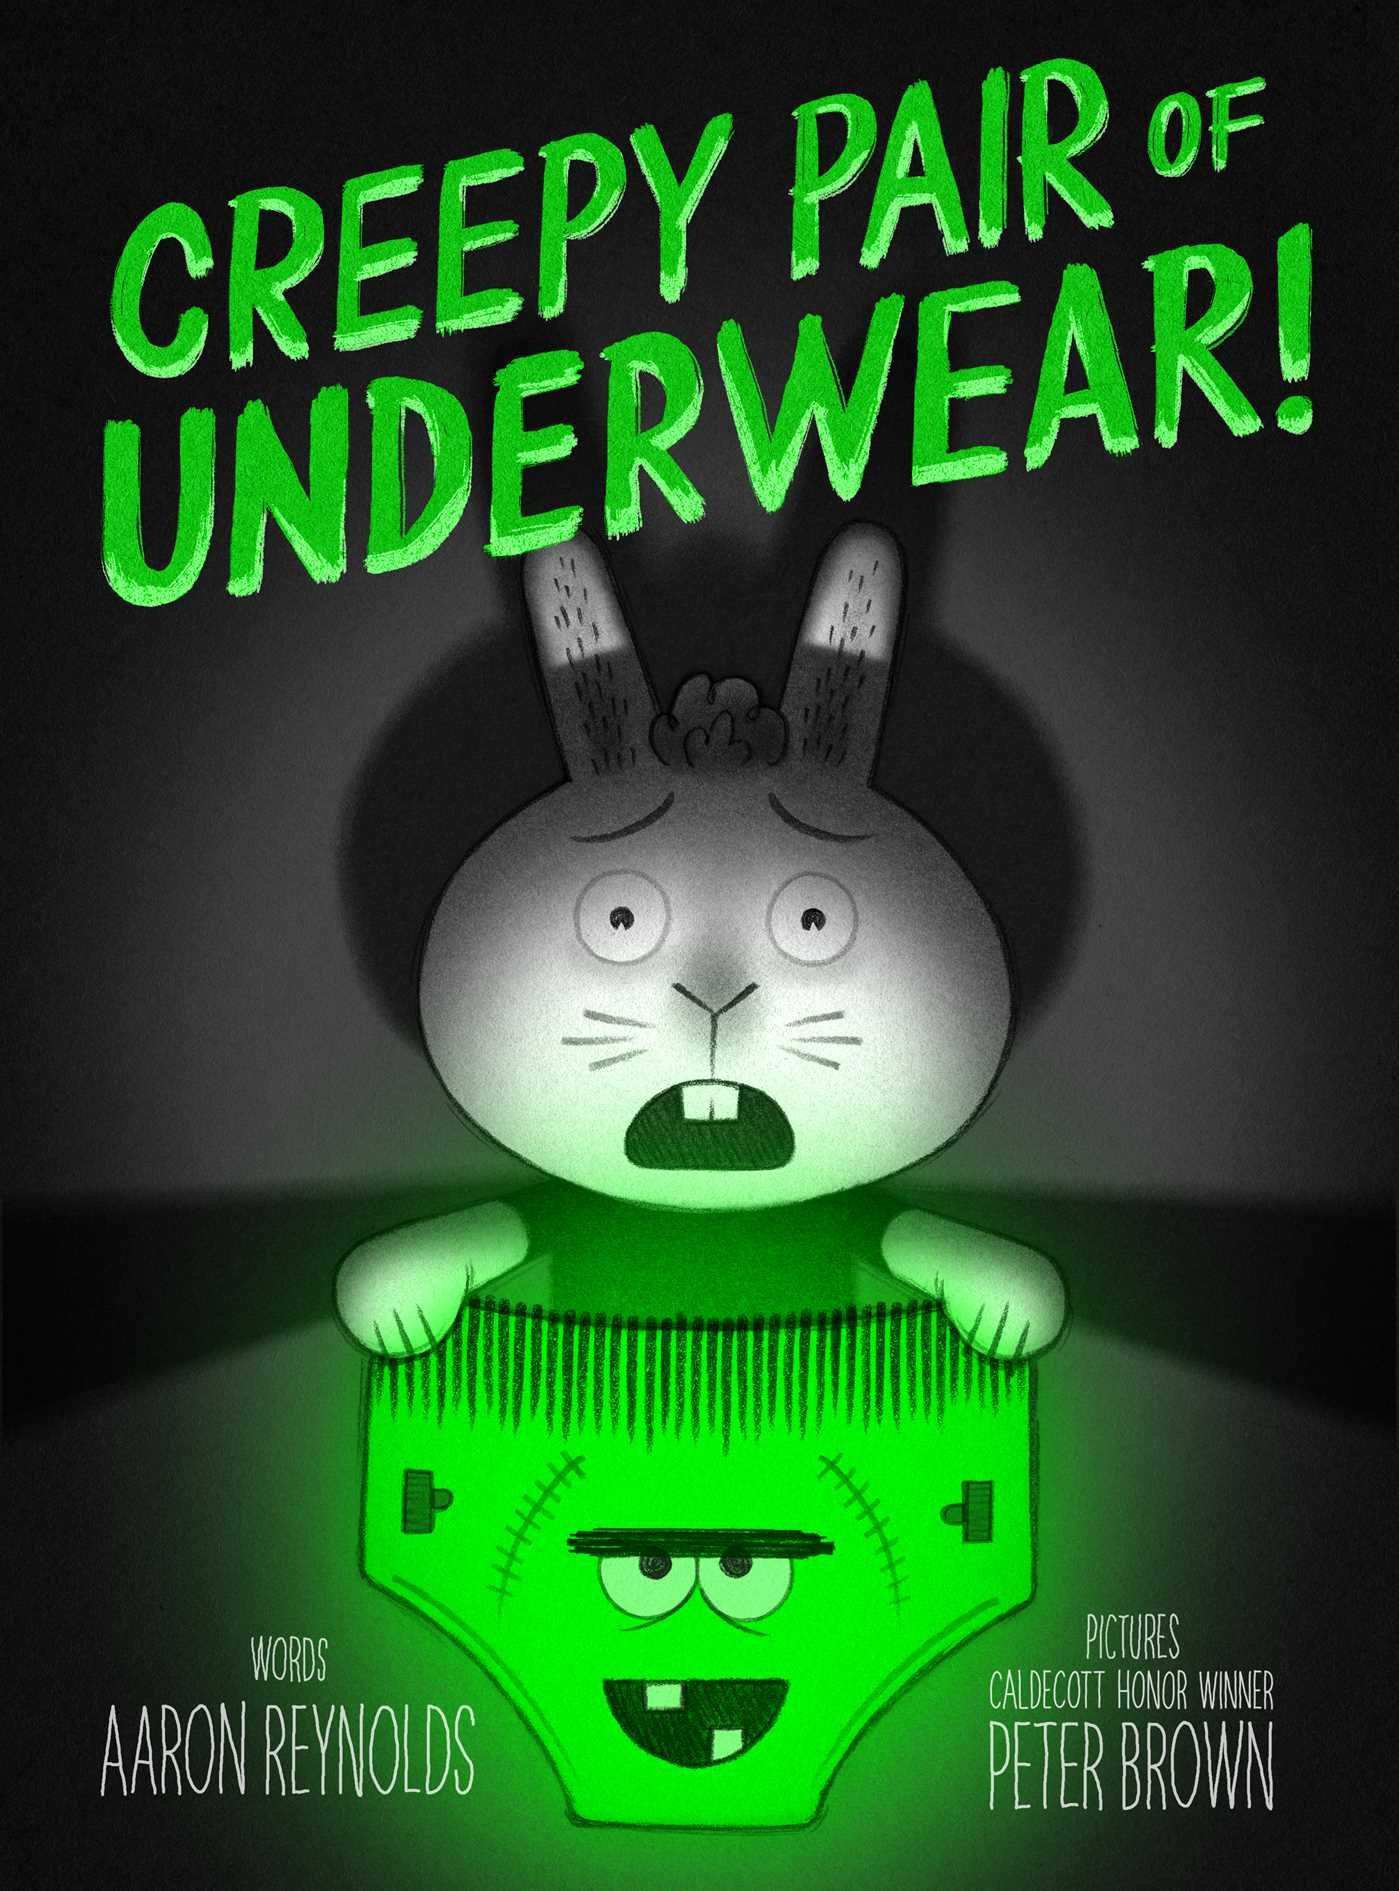 Creepy Pair of Underpants! by Aaron Reynolds